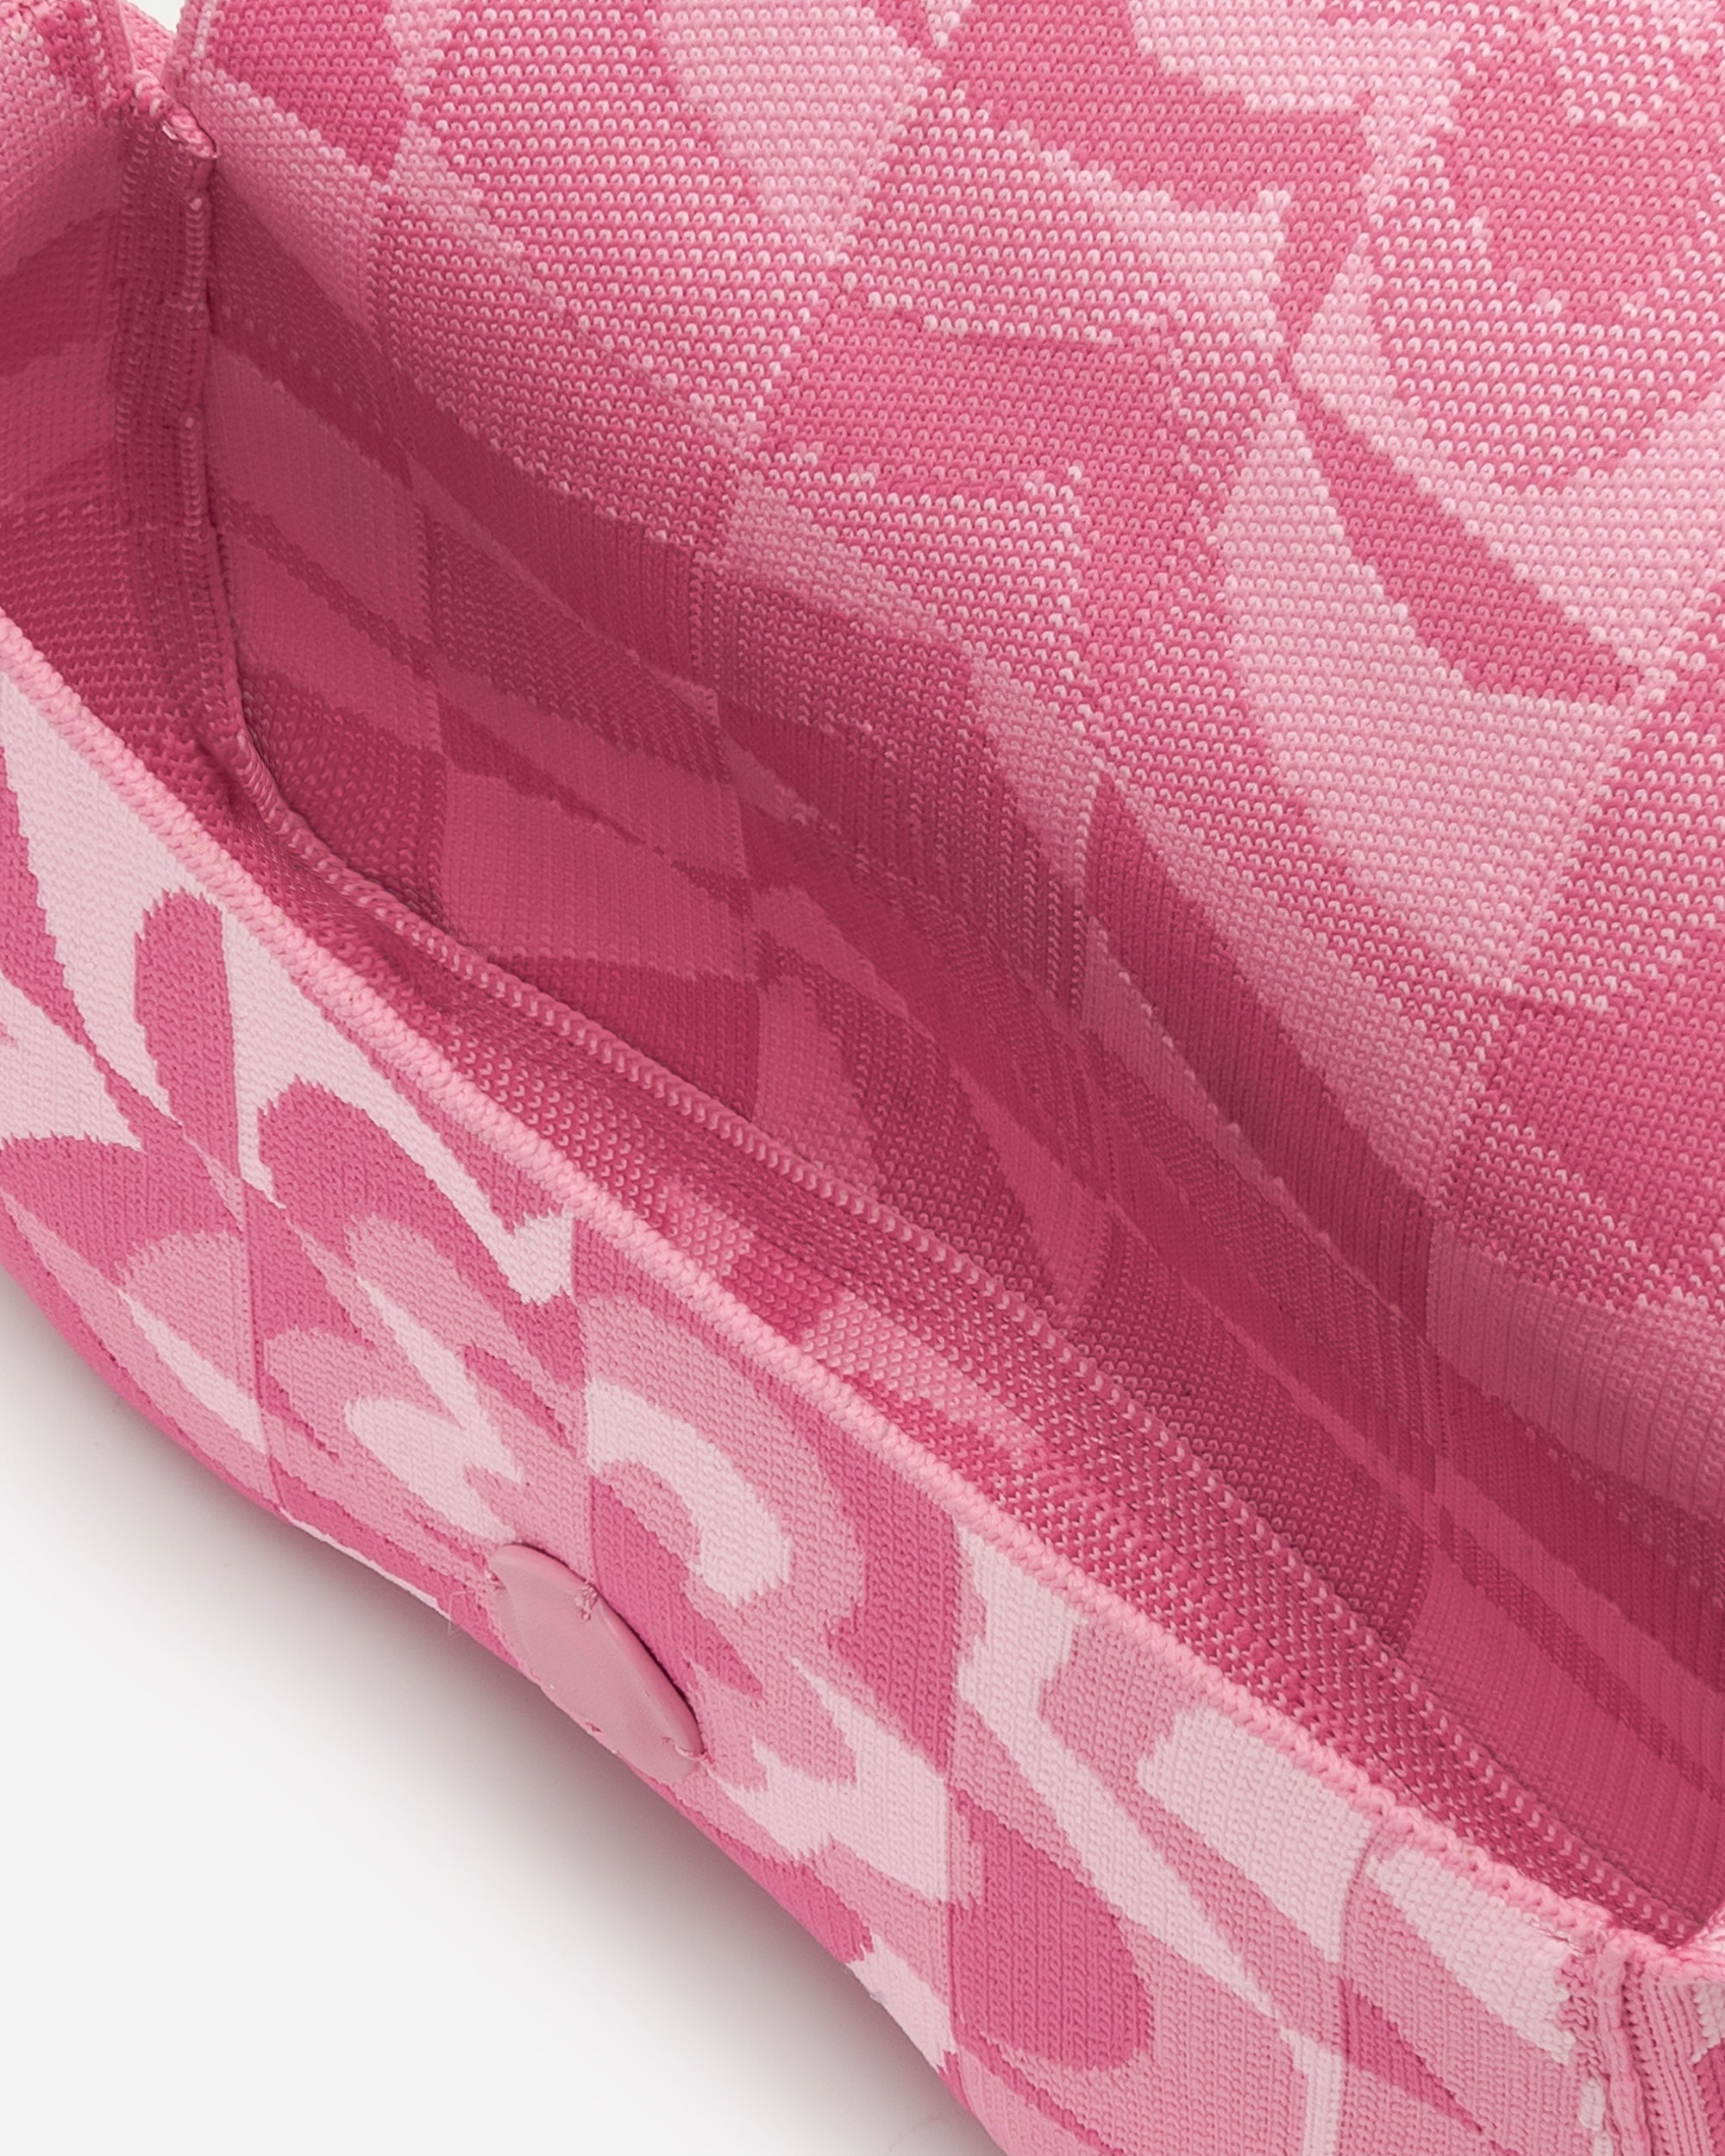 Becci 針織單肩包 - 淡粉色 & 粉色 & 亮粉色